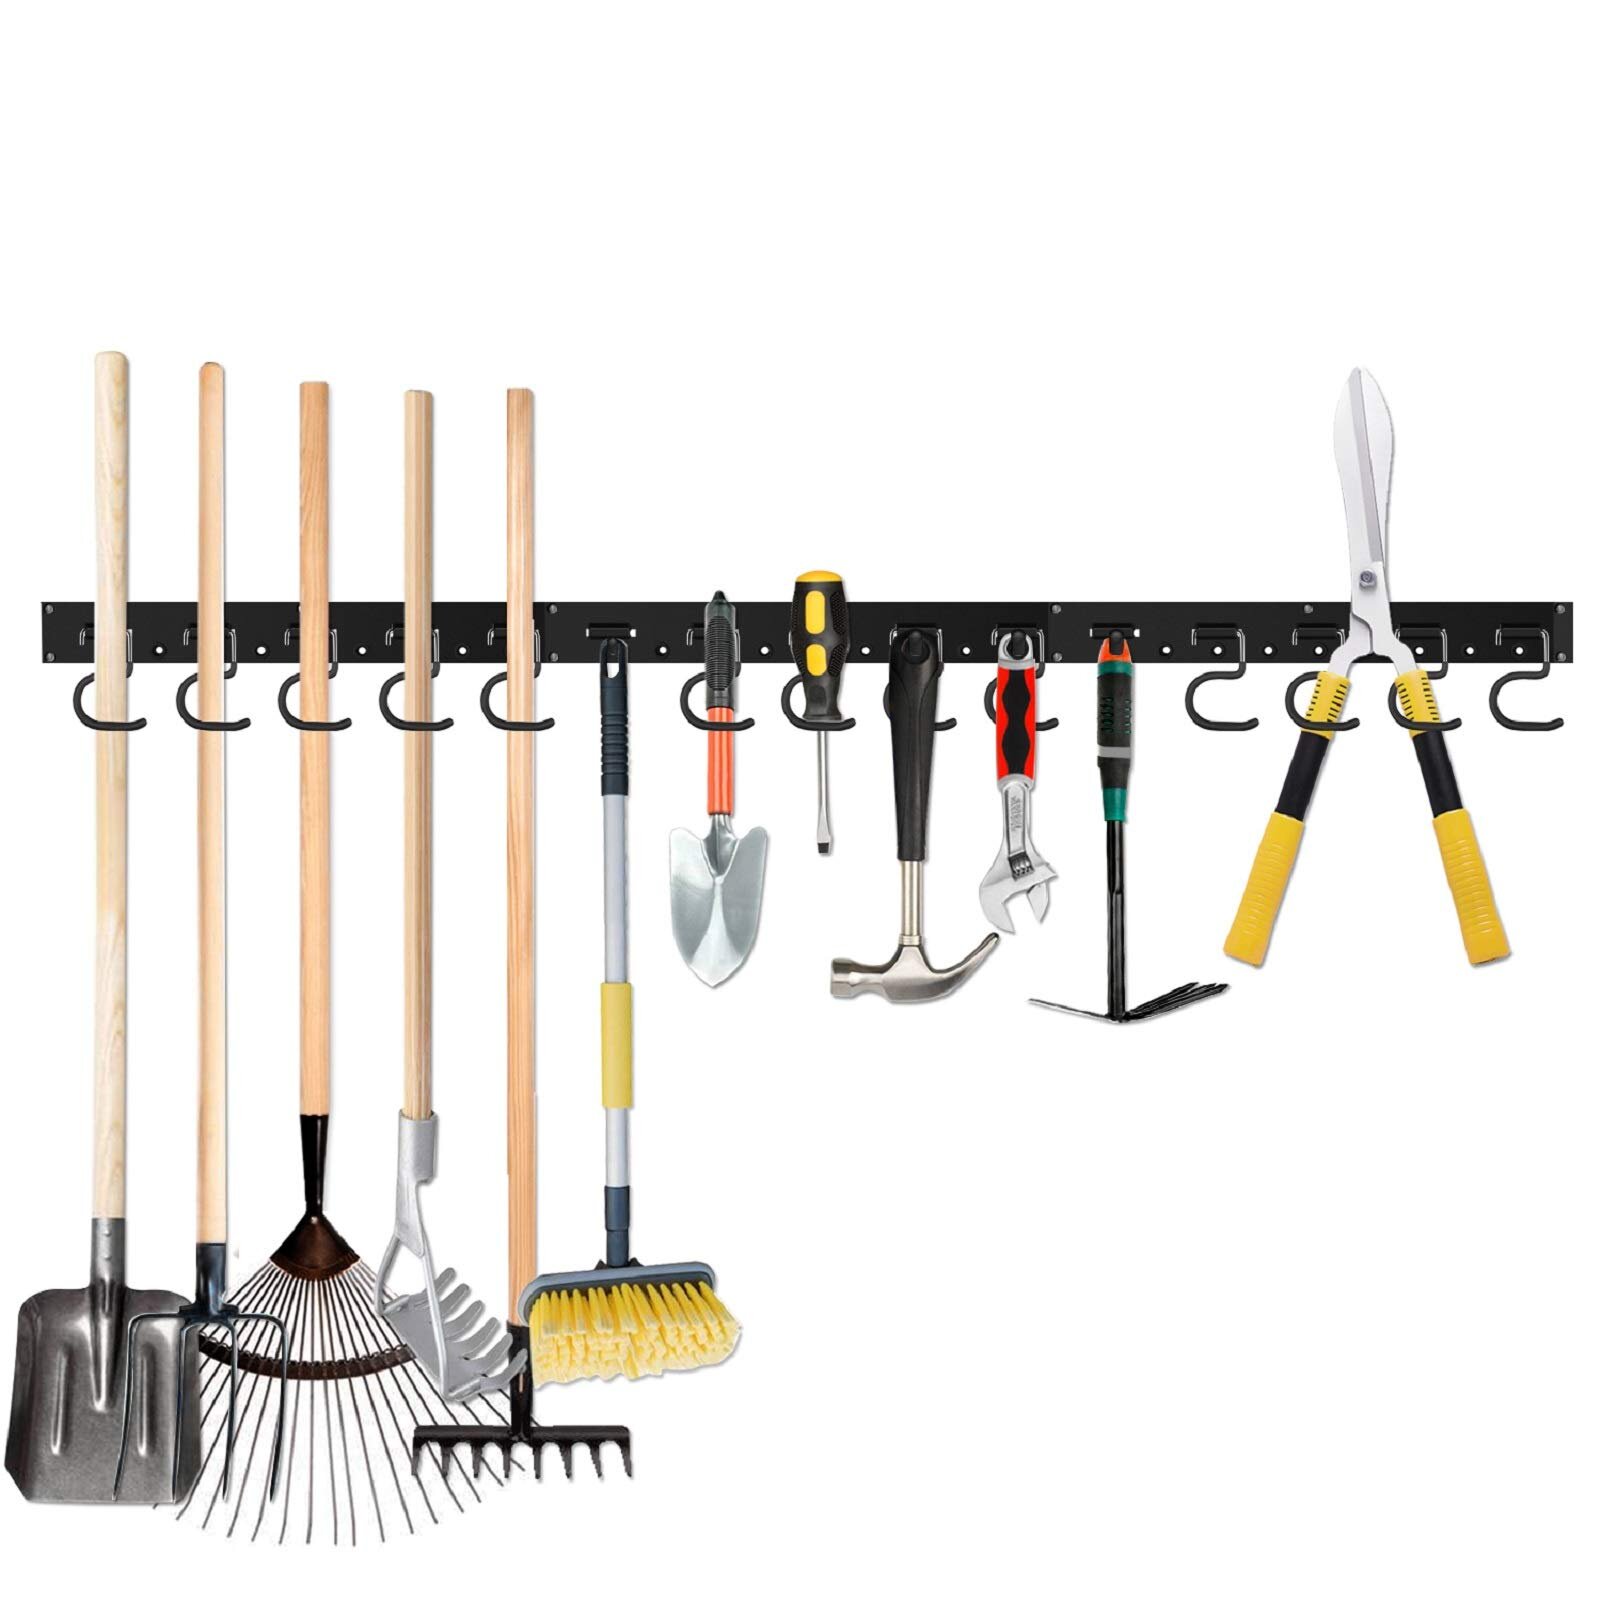 ABS Plastic Mop Broom Rakes Garage Tool Holder Wall Rack Cupboard Organiser